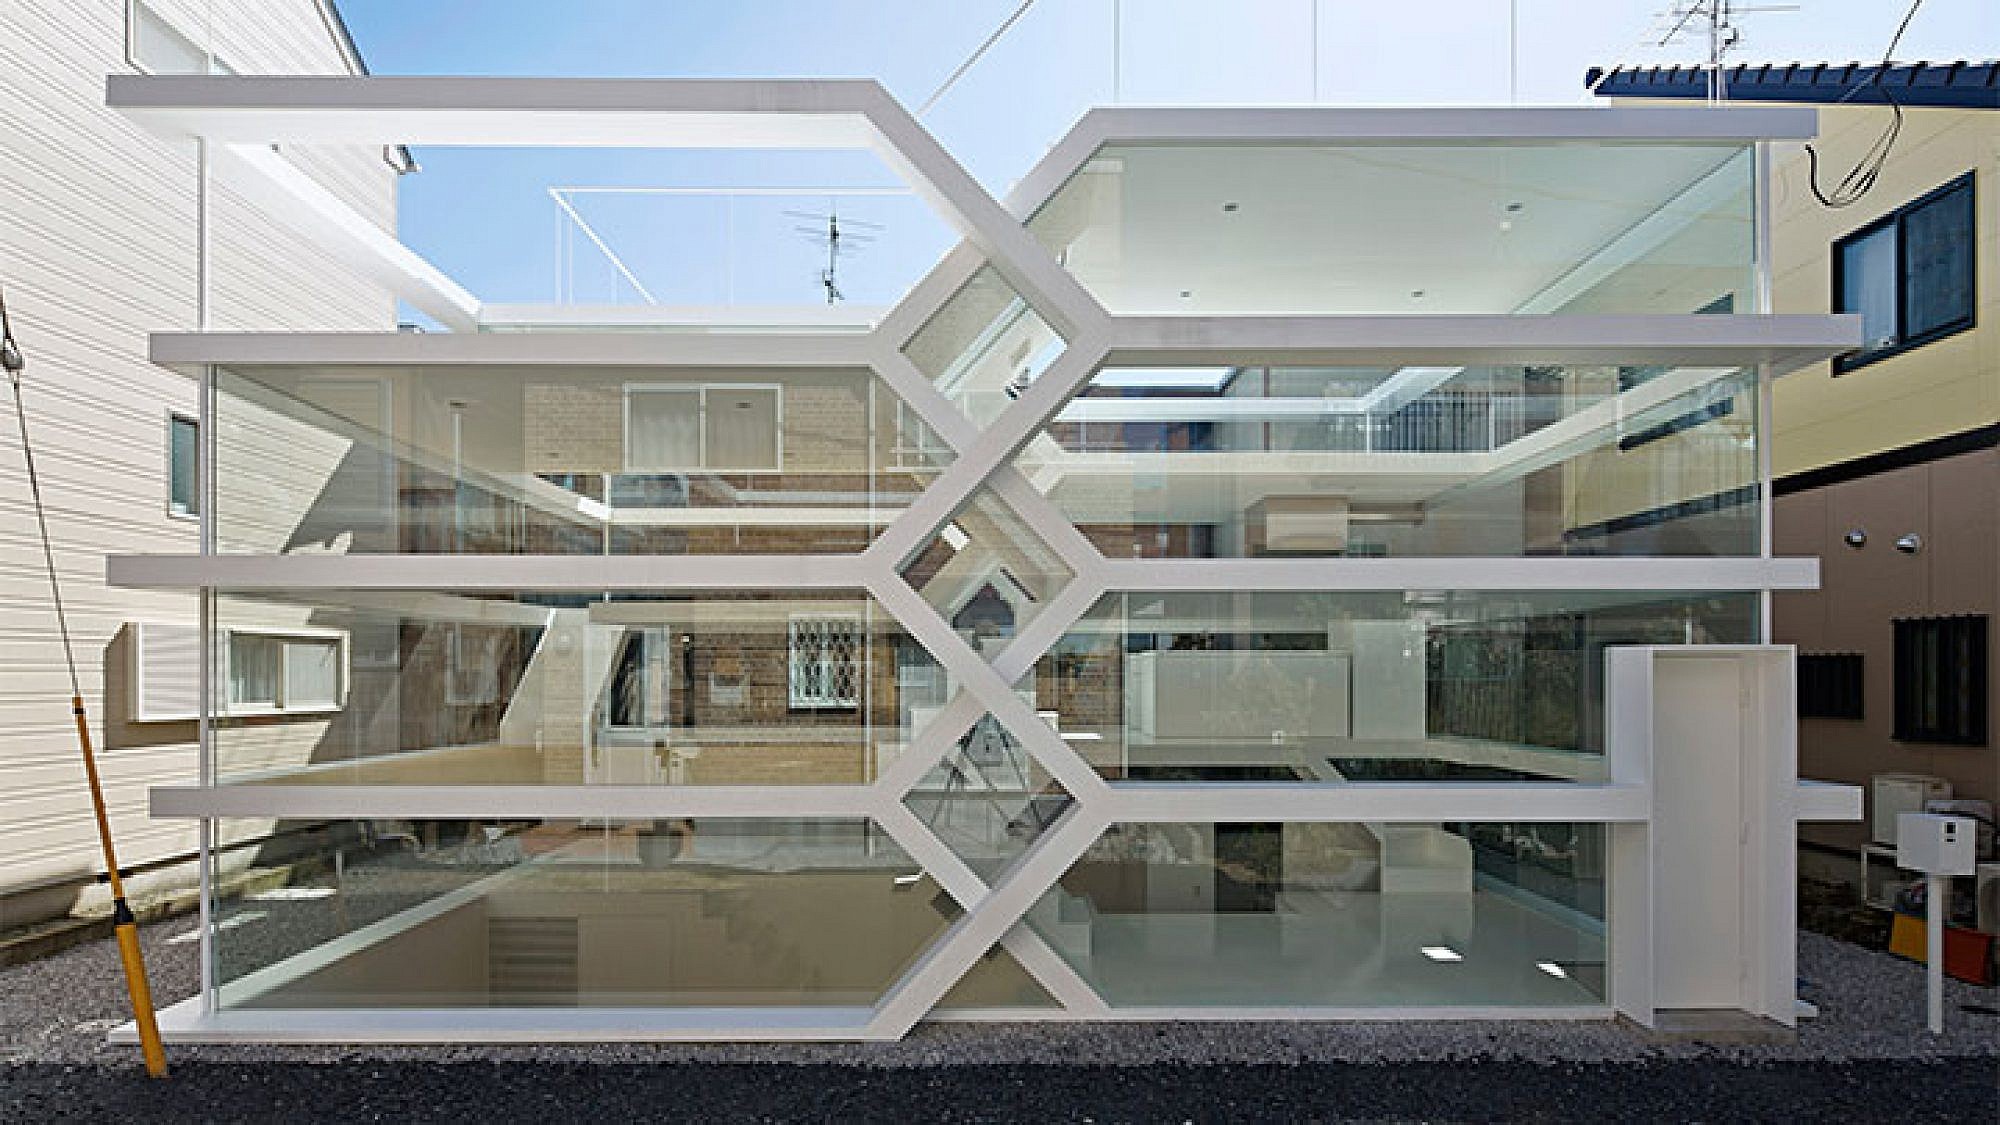 חלונות עצומים המשמשים כקירות | צילום: Koichi Torimura